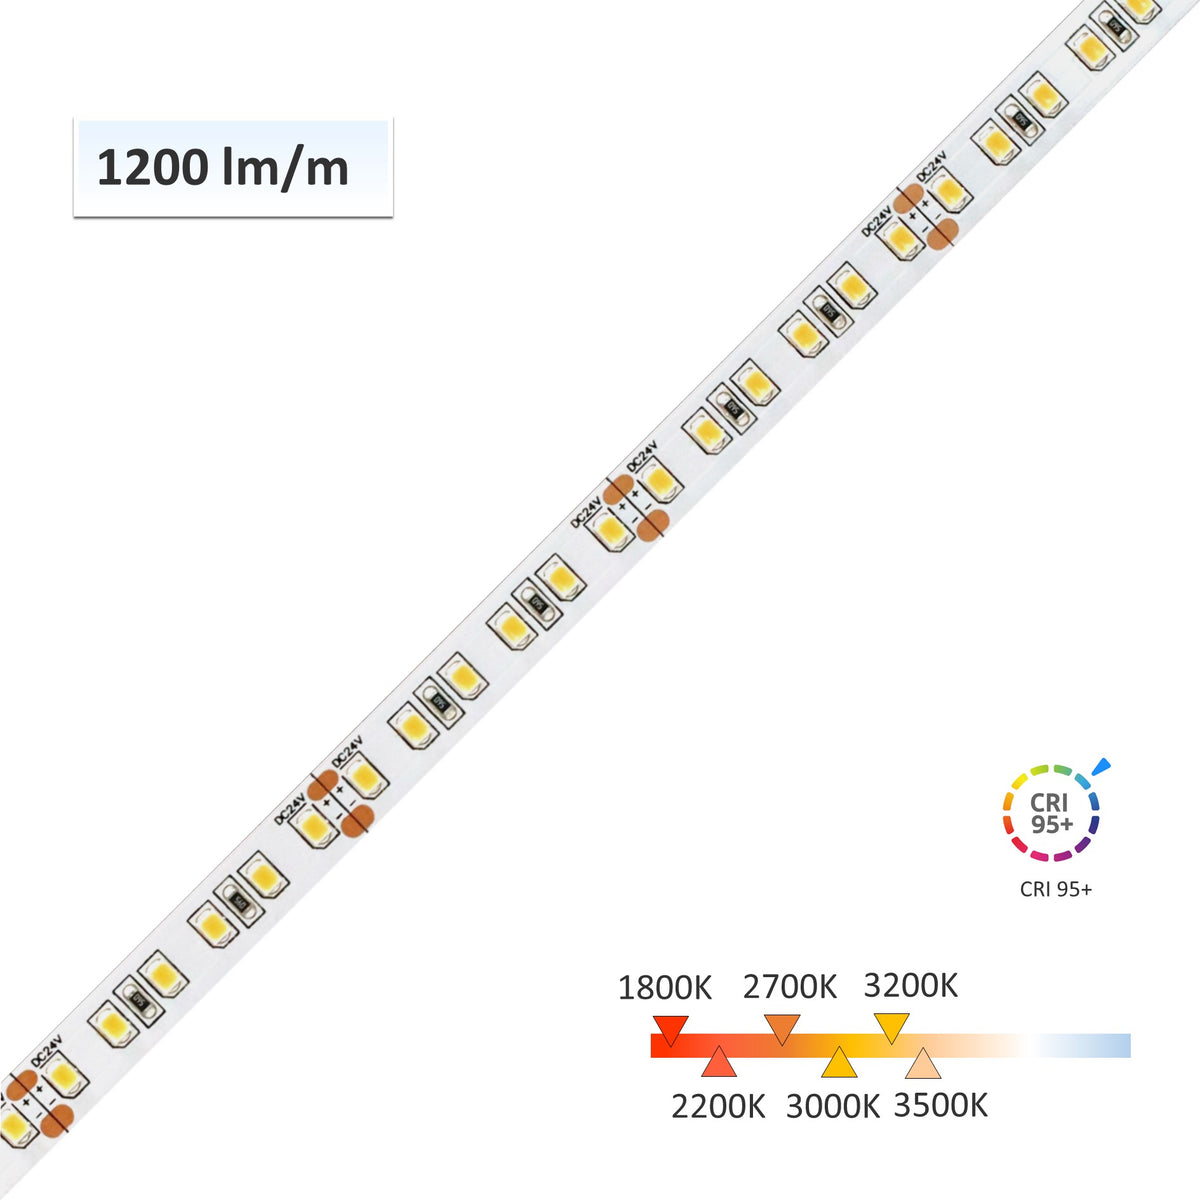 2700k LED Strip Light - High CRI 95+ 5050 12V LED Strips